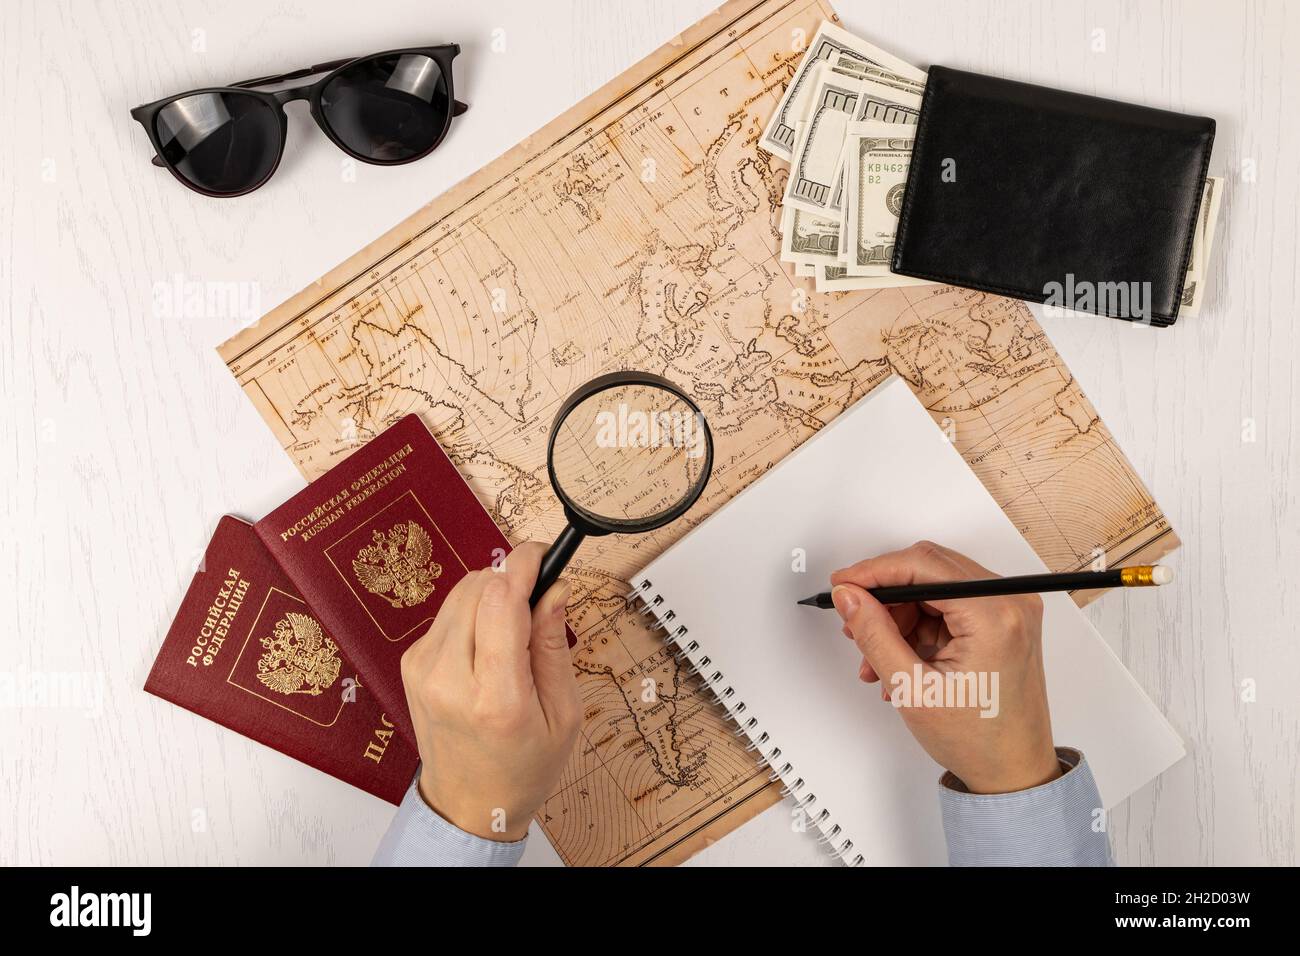 la main féminine prend des notes avec un crayon dans un carnet. sur une table blanche en bois se trouve une carte du monde, deux passeports, une loupe et une wa noire Banque D'Images